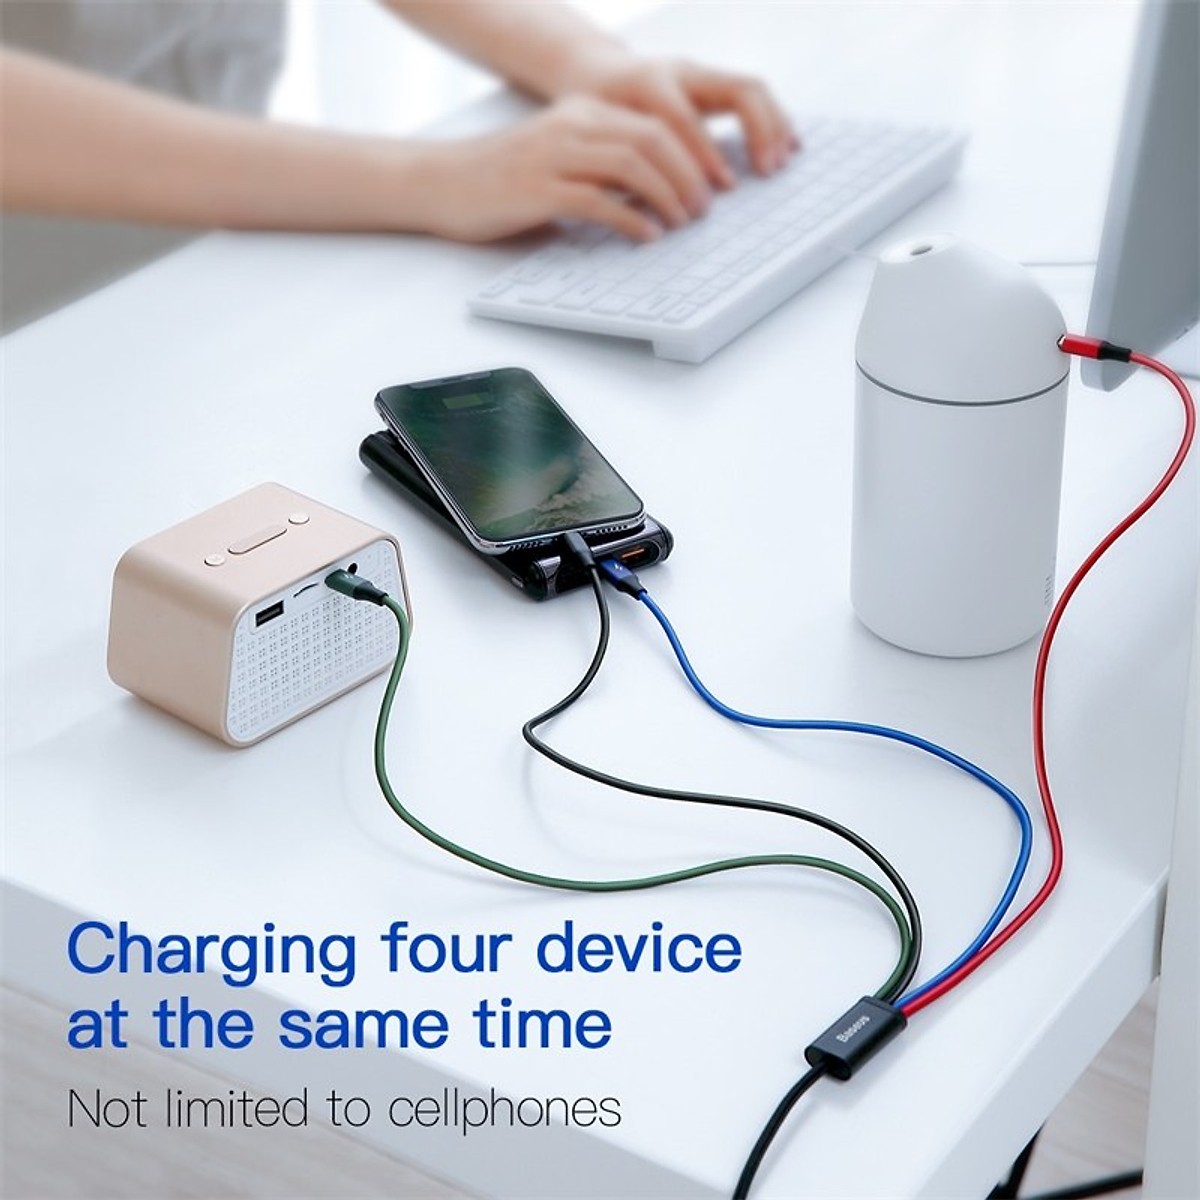 Dây cáp sạc đa năng 4 in1 2 Type-C, Lightning, Micro USB hiệu Baseus Rapid Series cho iPhone/ iPad, Smartphone &amp; Tablet Android (3.5A, 1.2M, Fast charge 4 in 1 Cable) - Hàng chính hãng